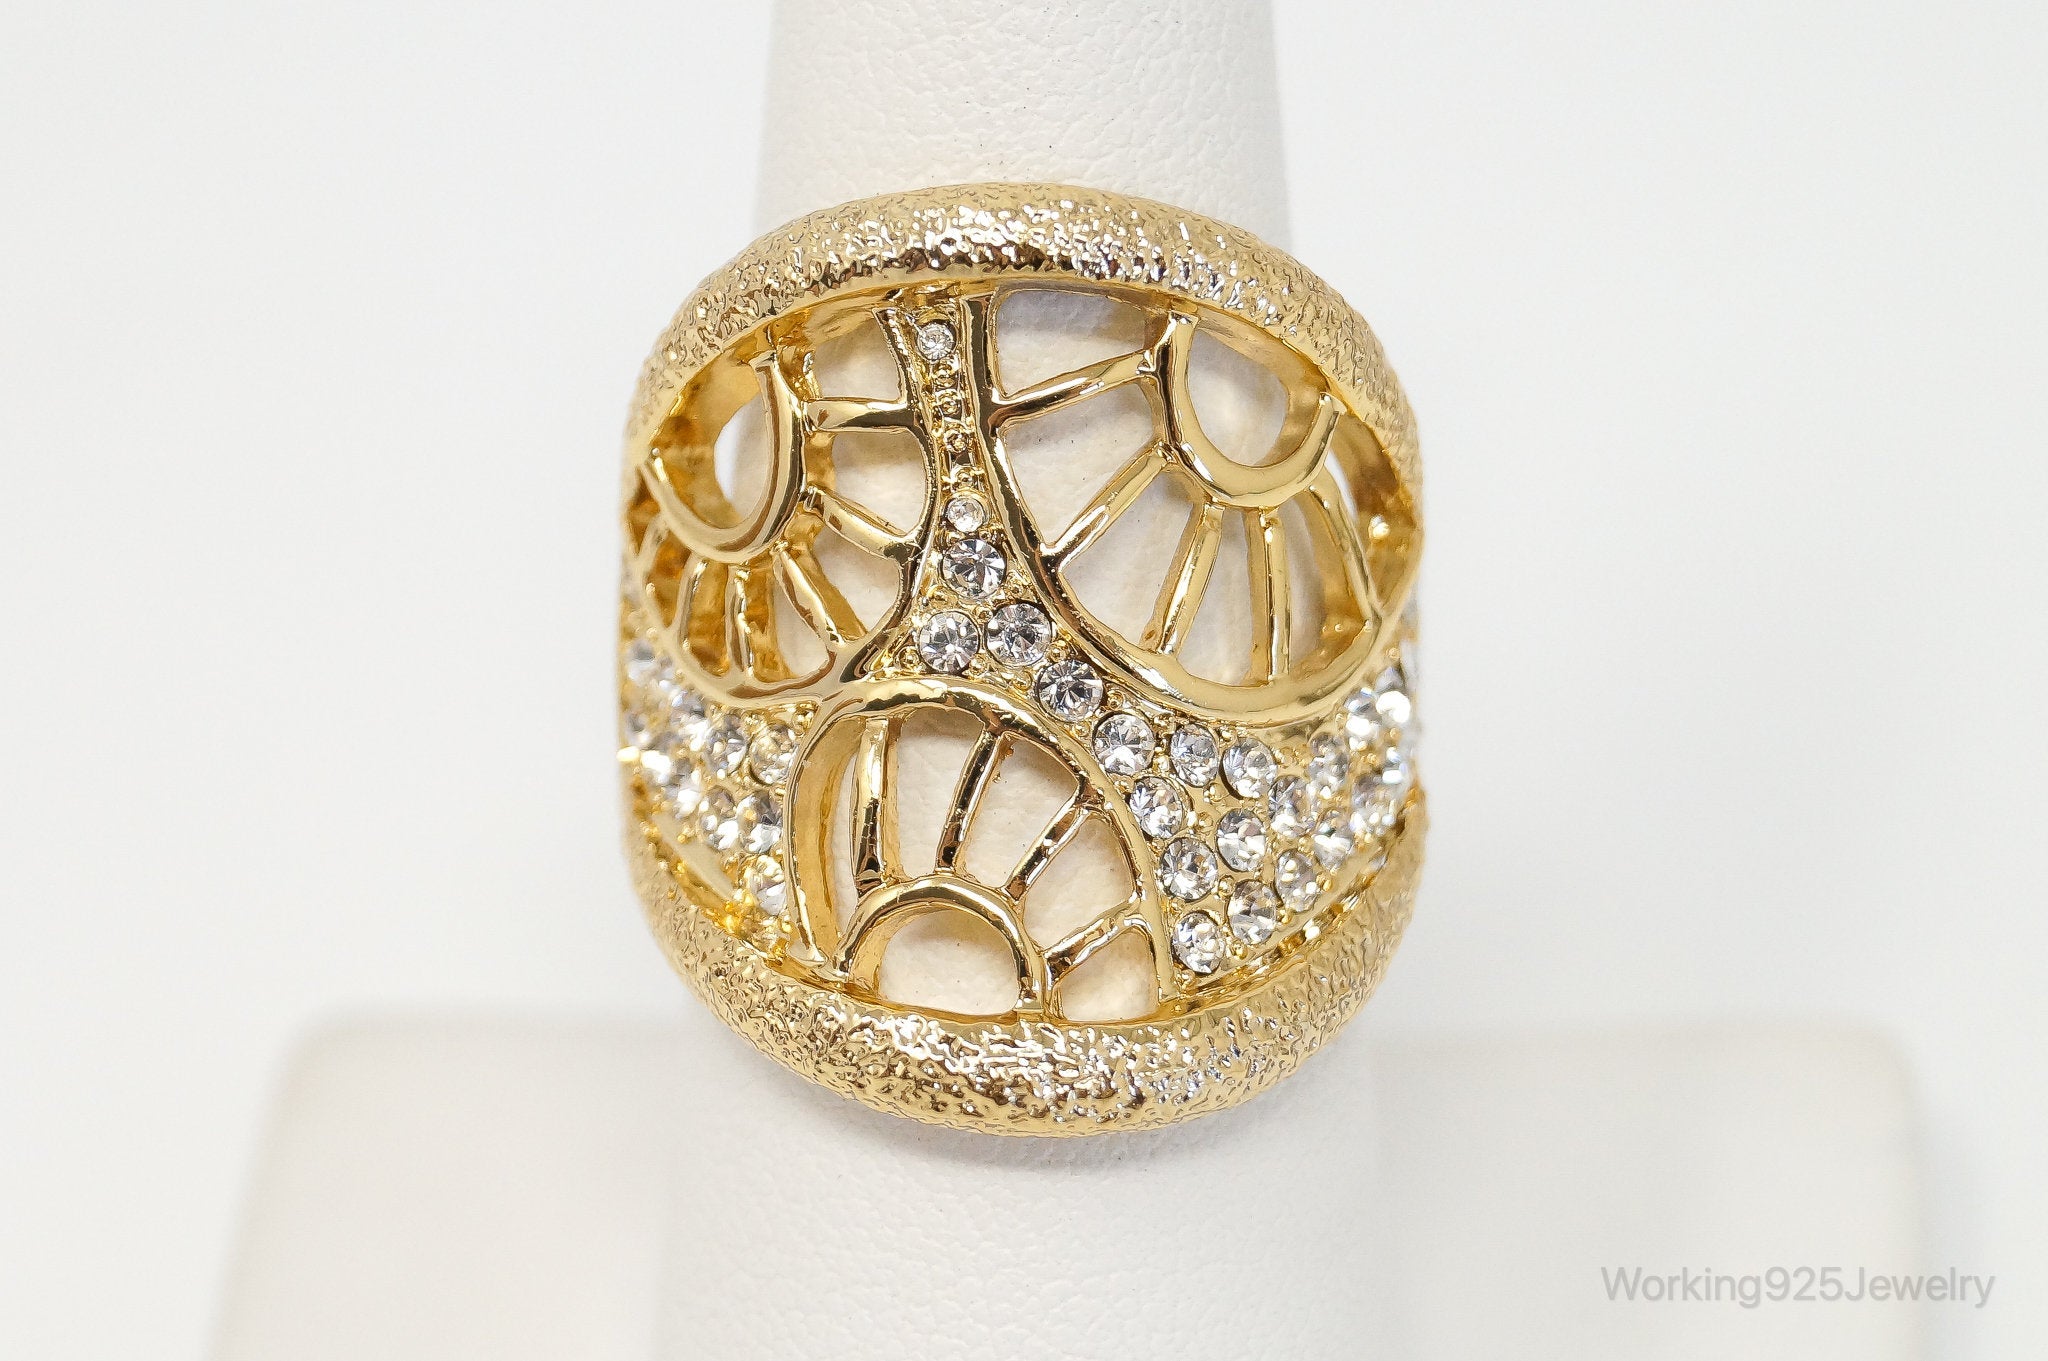 Vintage Golden Enamel Crystals Art Deco Costume Ring Size 7.25